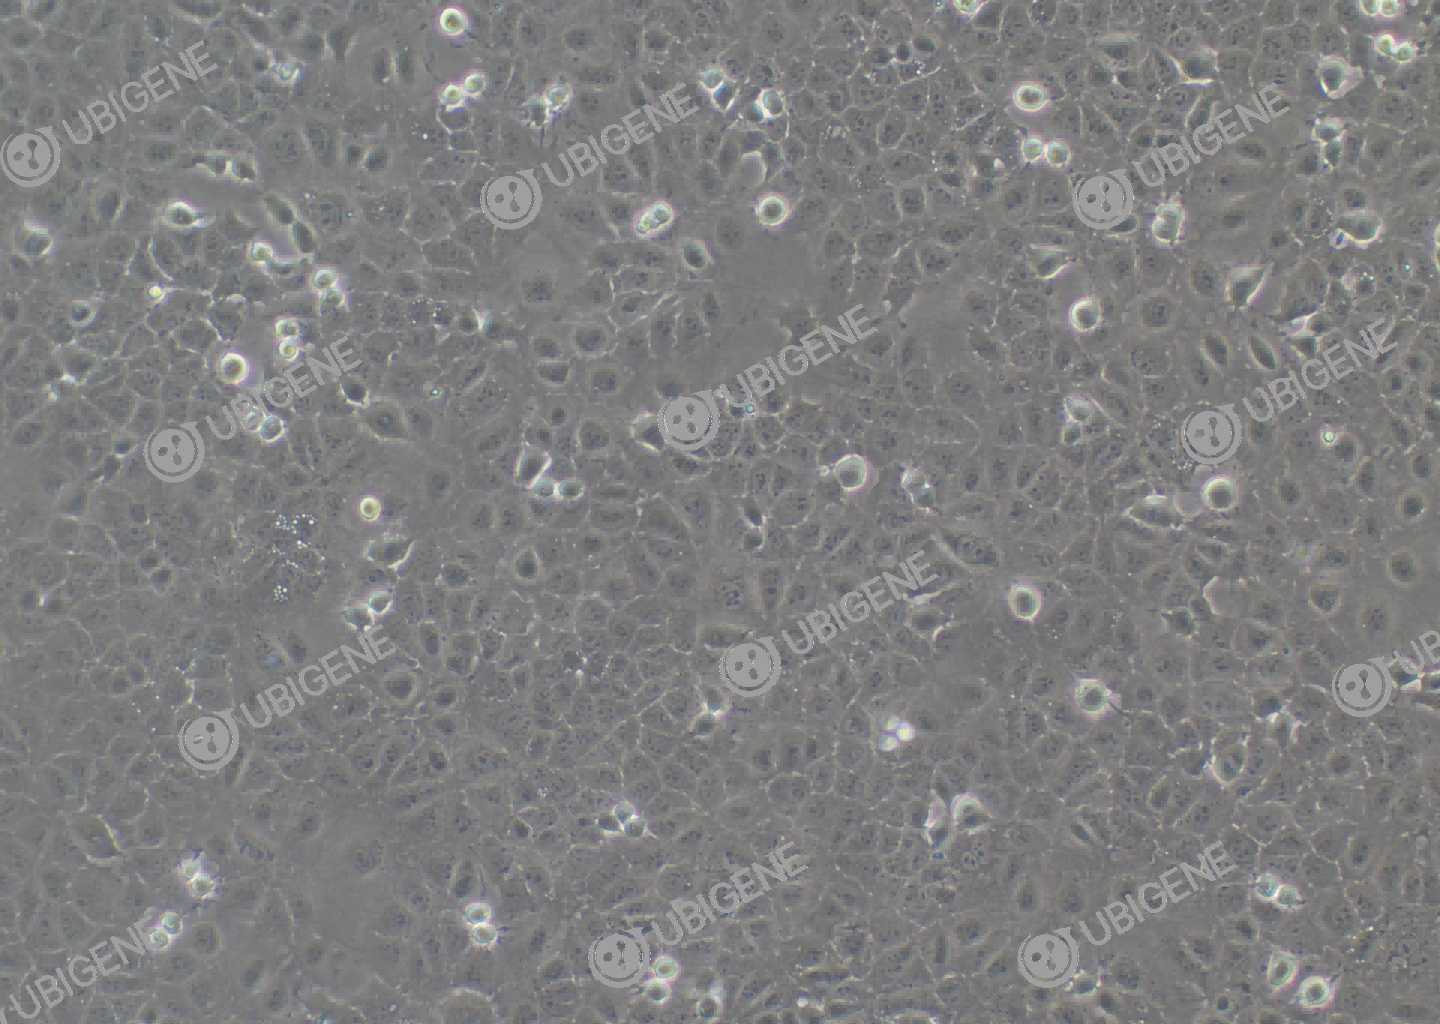 小鼠正常肝细胞(AML12)细胞形态培养图